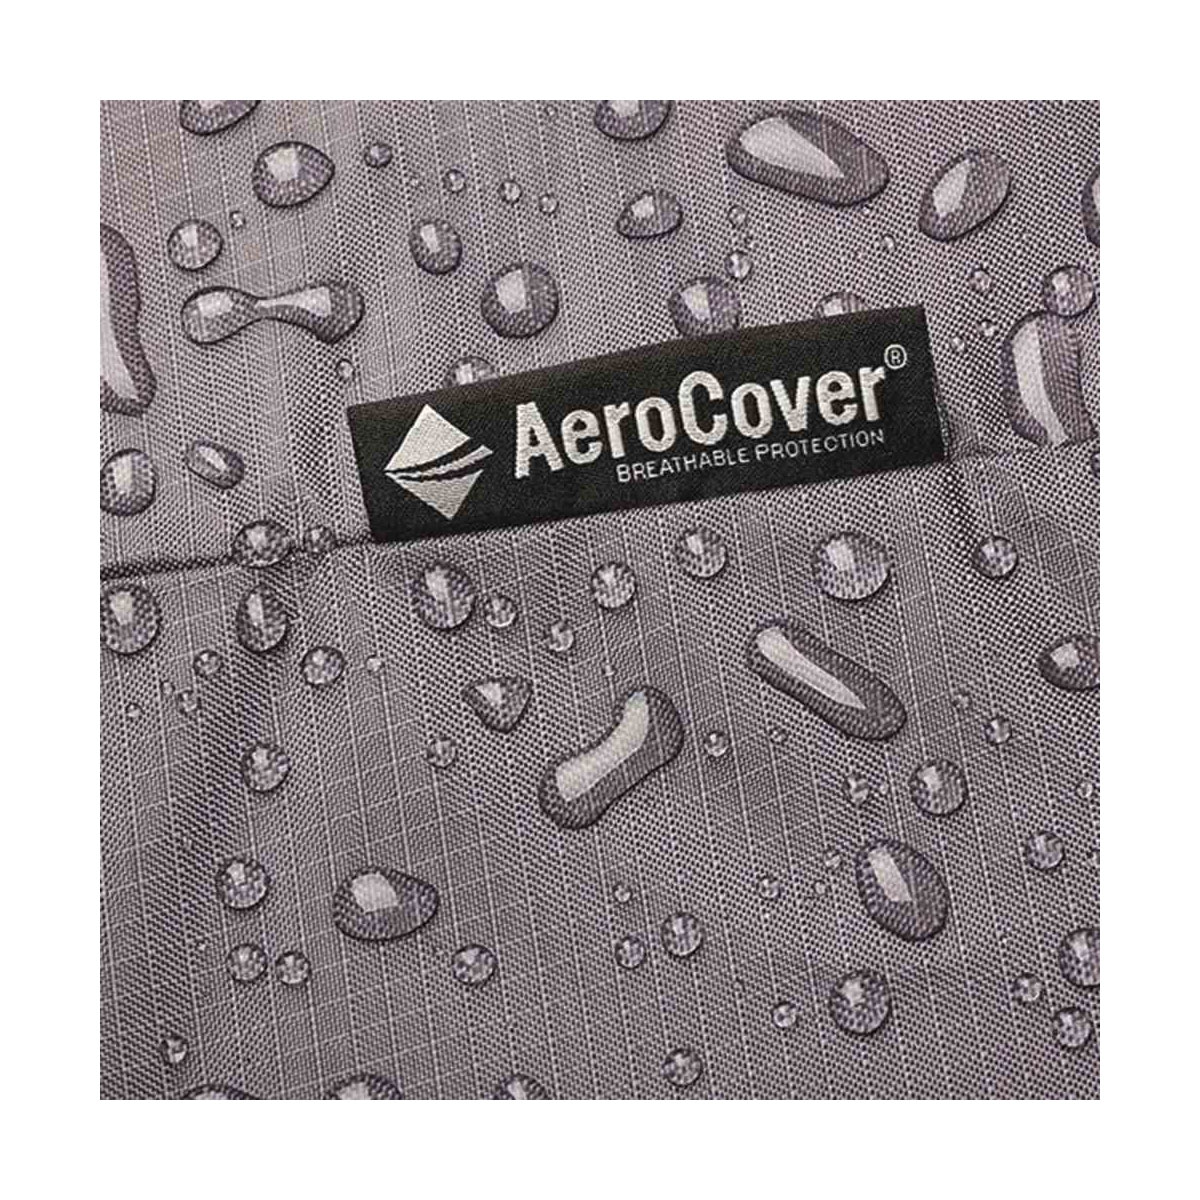 AeroCover Schutzhülle für Loungesessel, 75x78x65/110 cm, anthrazit